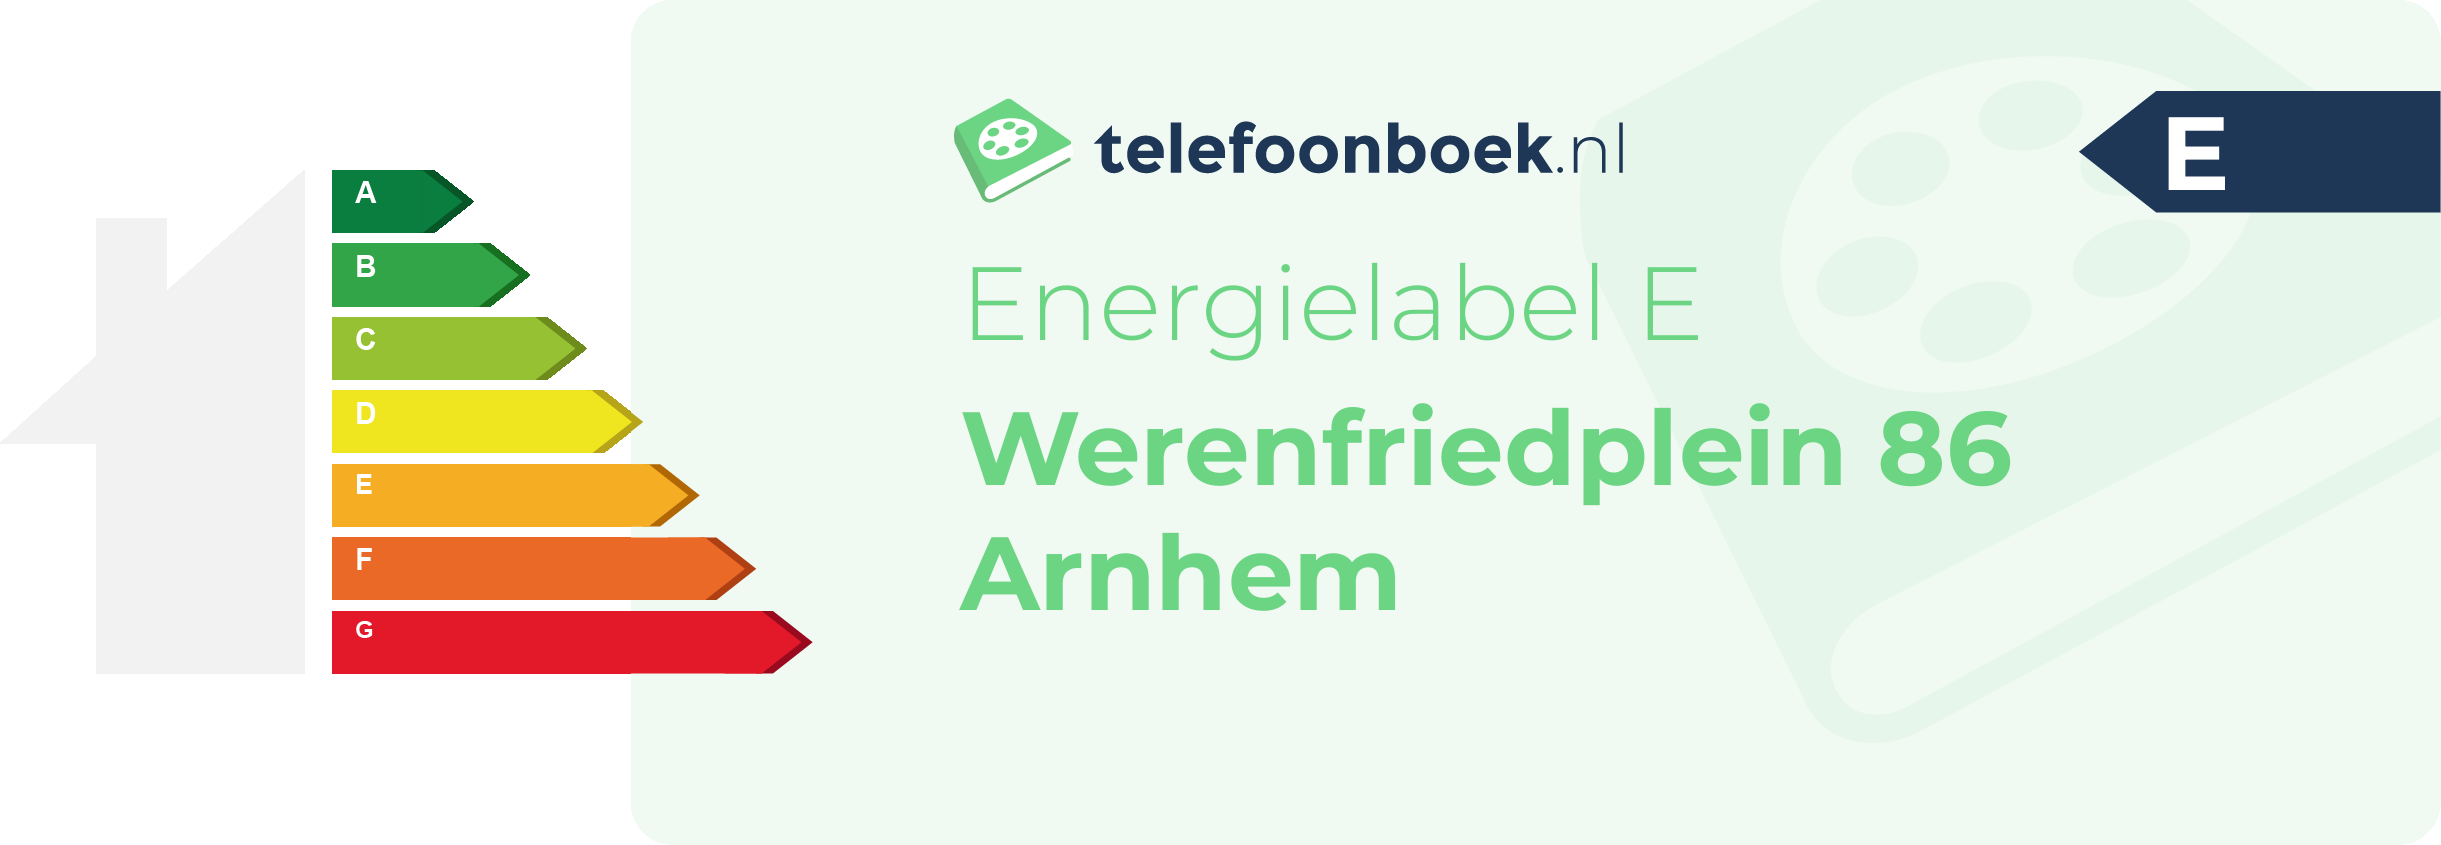 Energielabel Werenfriedplein 86 Arnhem